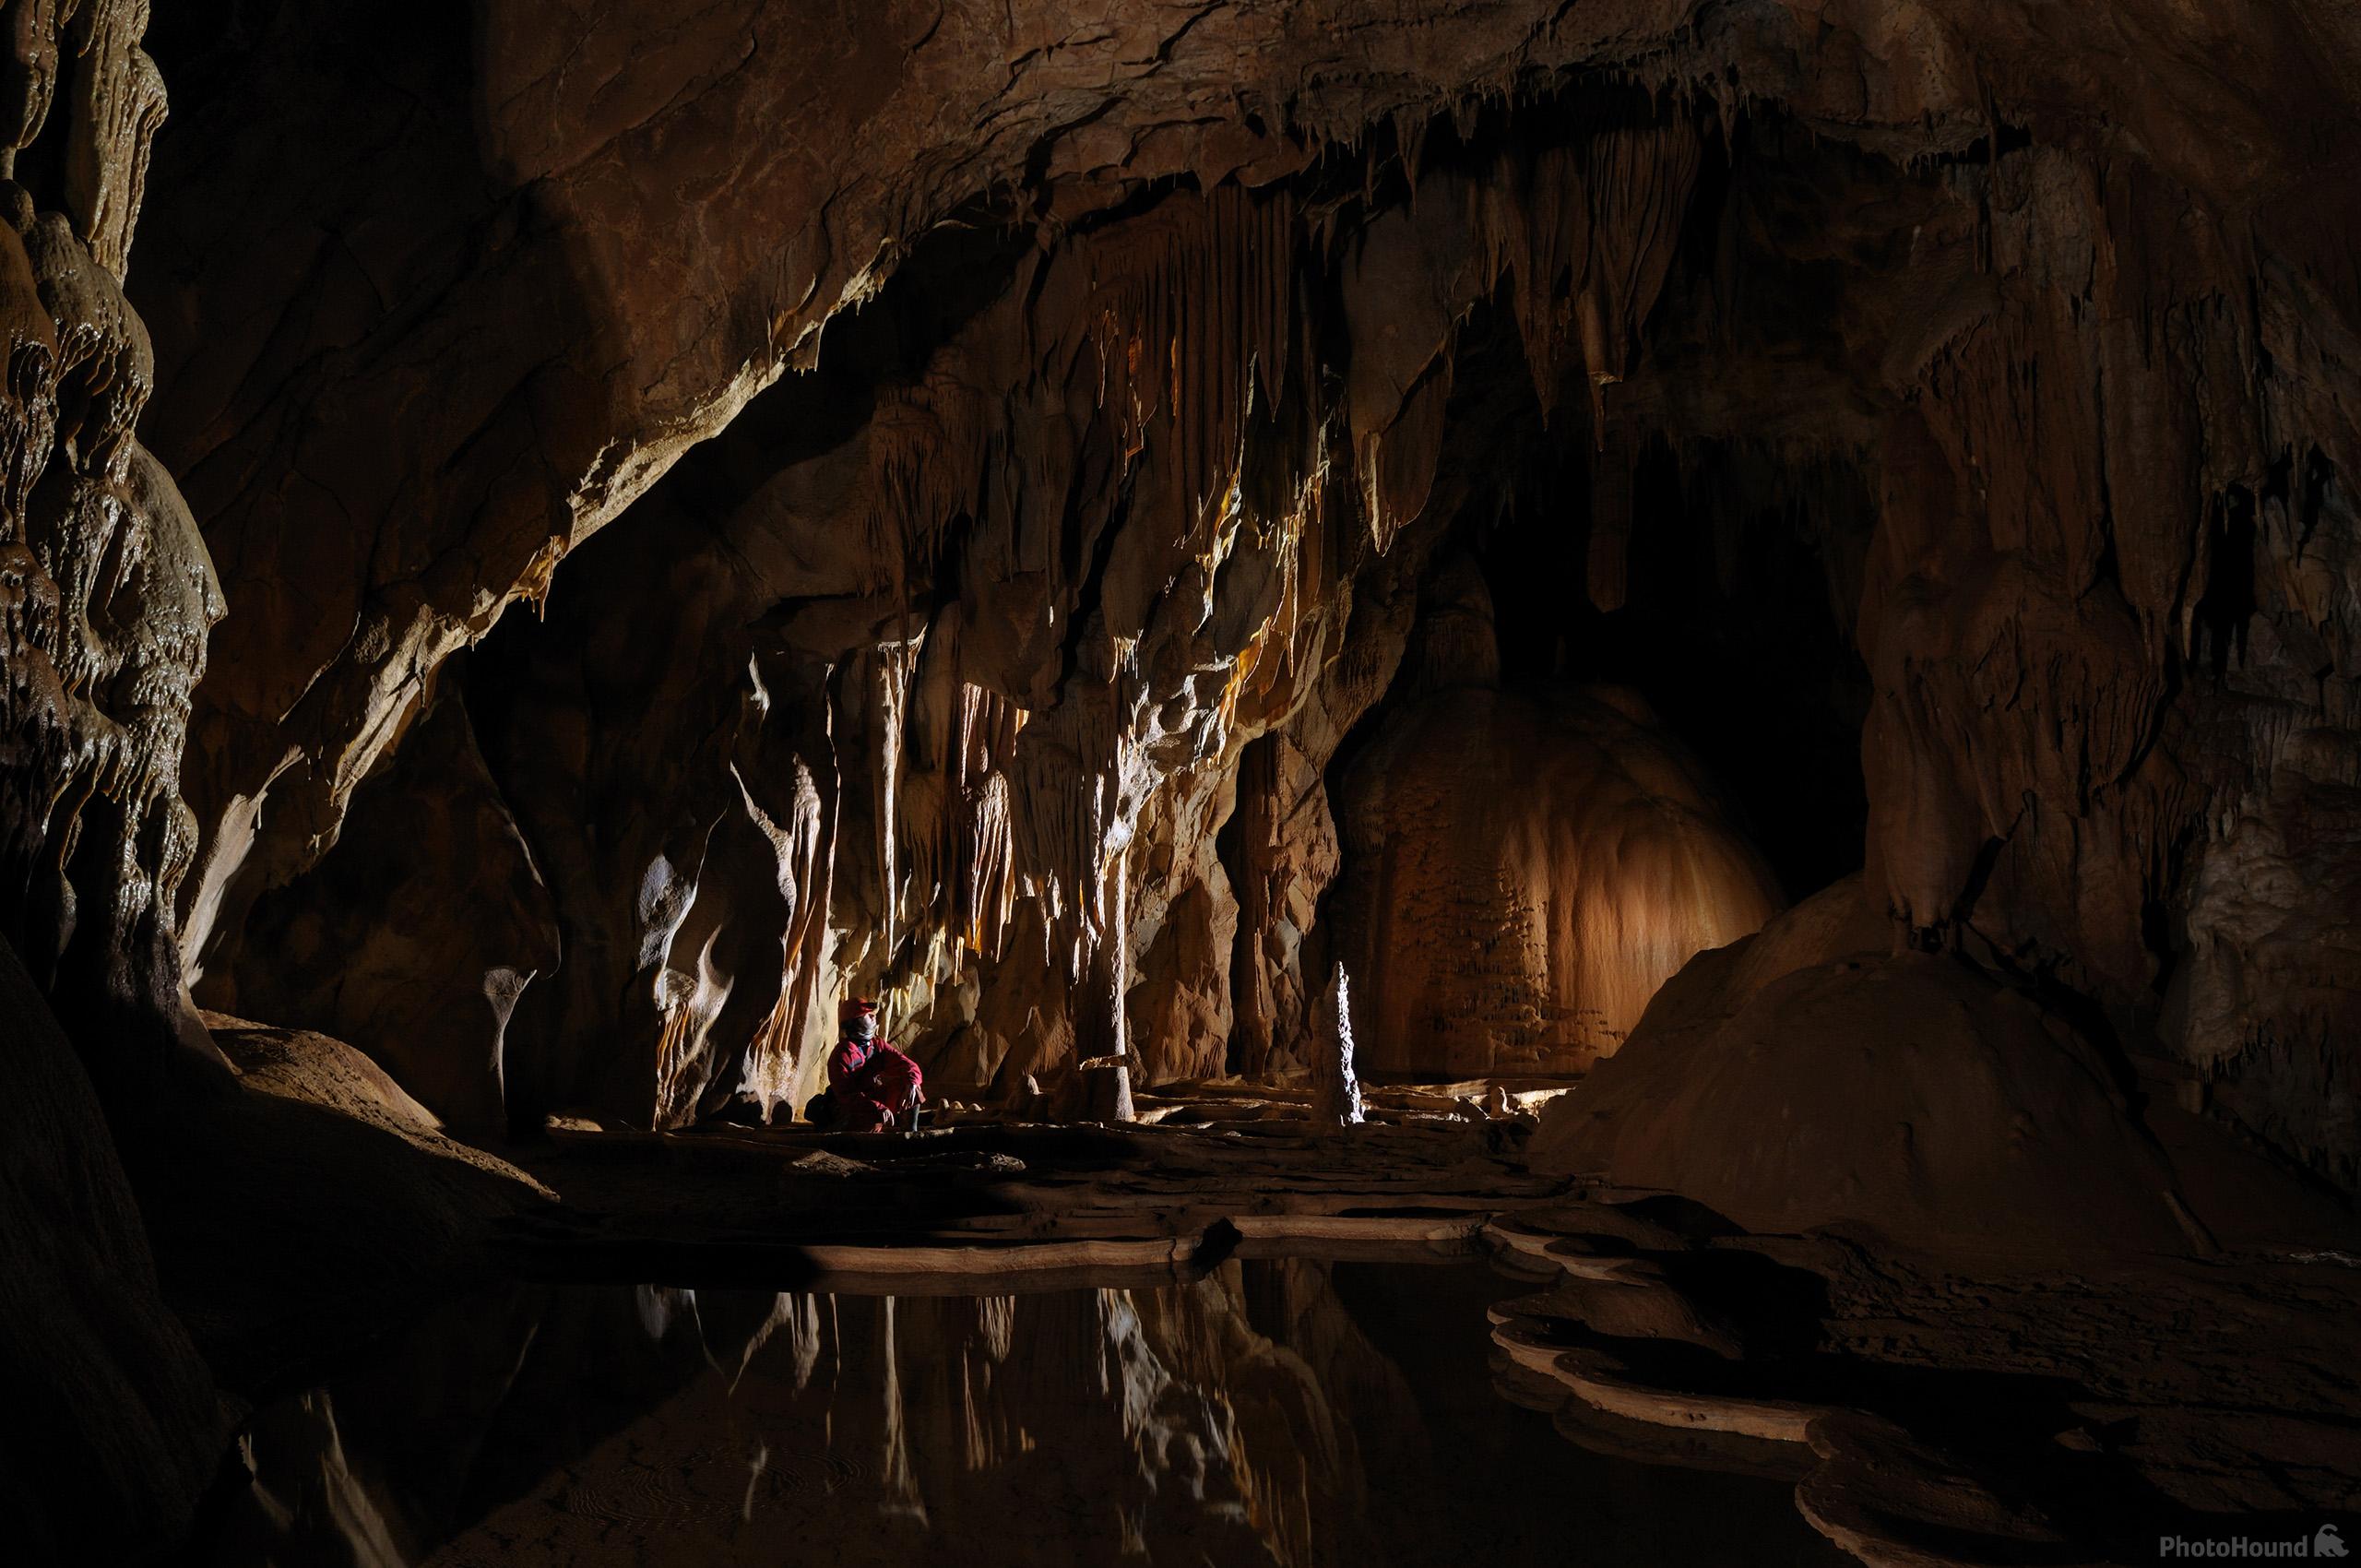 Image of Planinska Jama (Planina Cave) by Luka Esenko